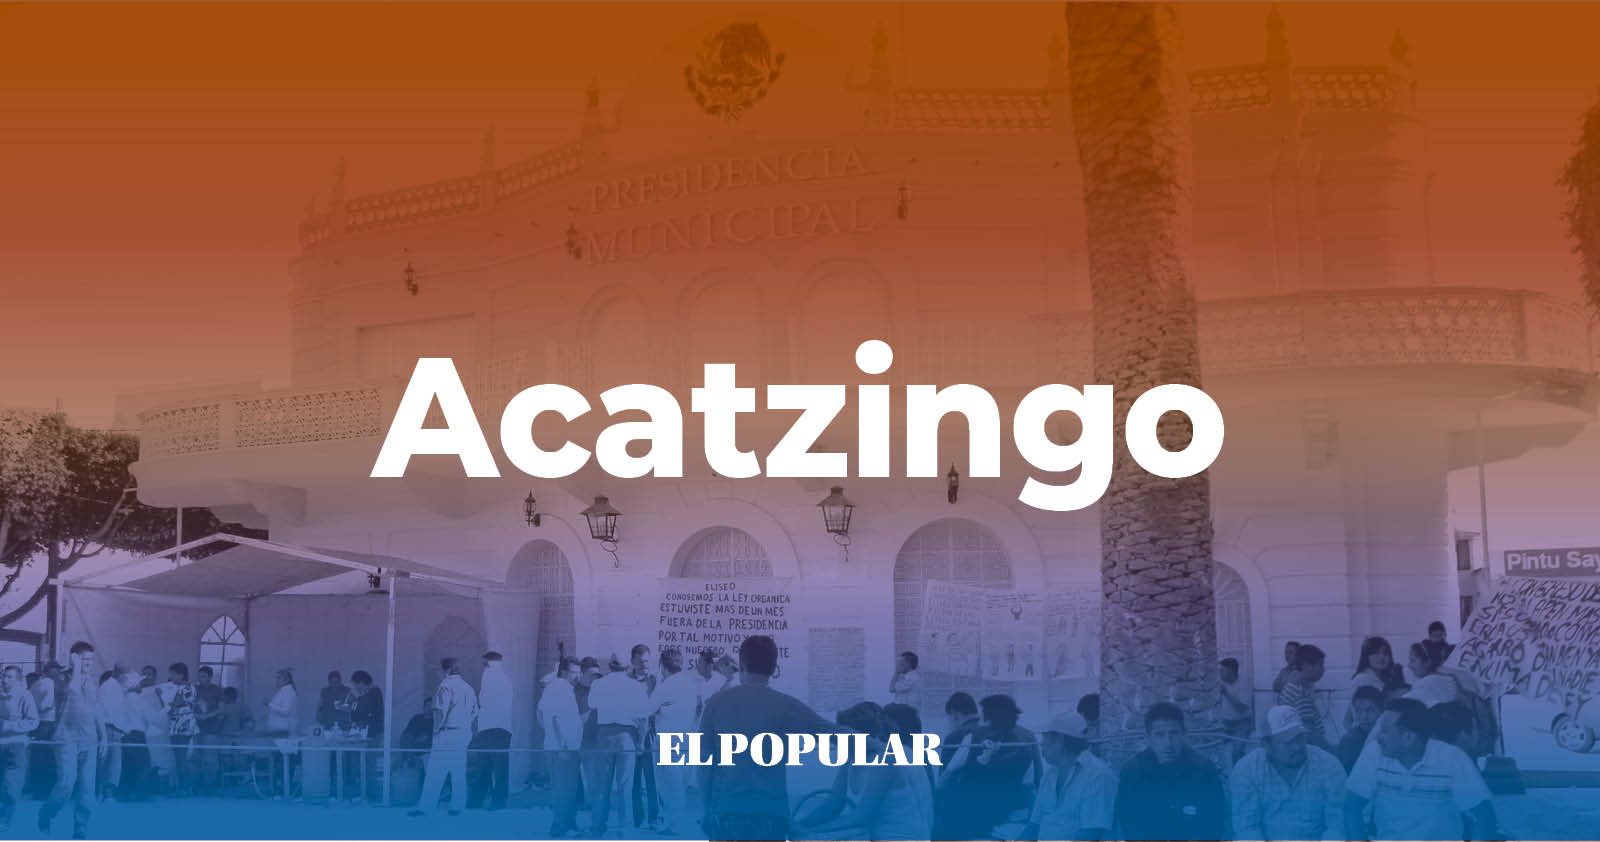 Acatzingo